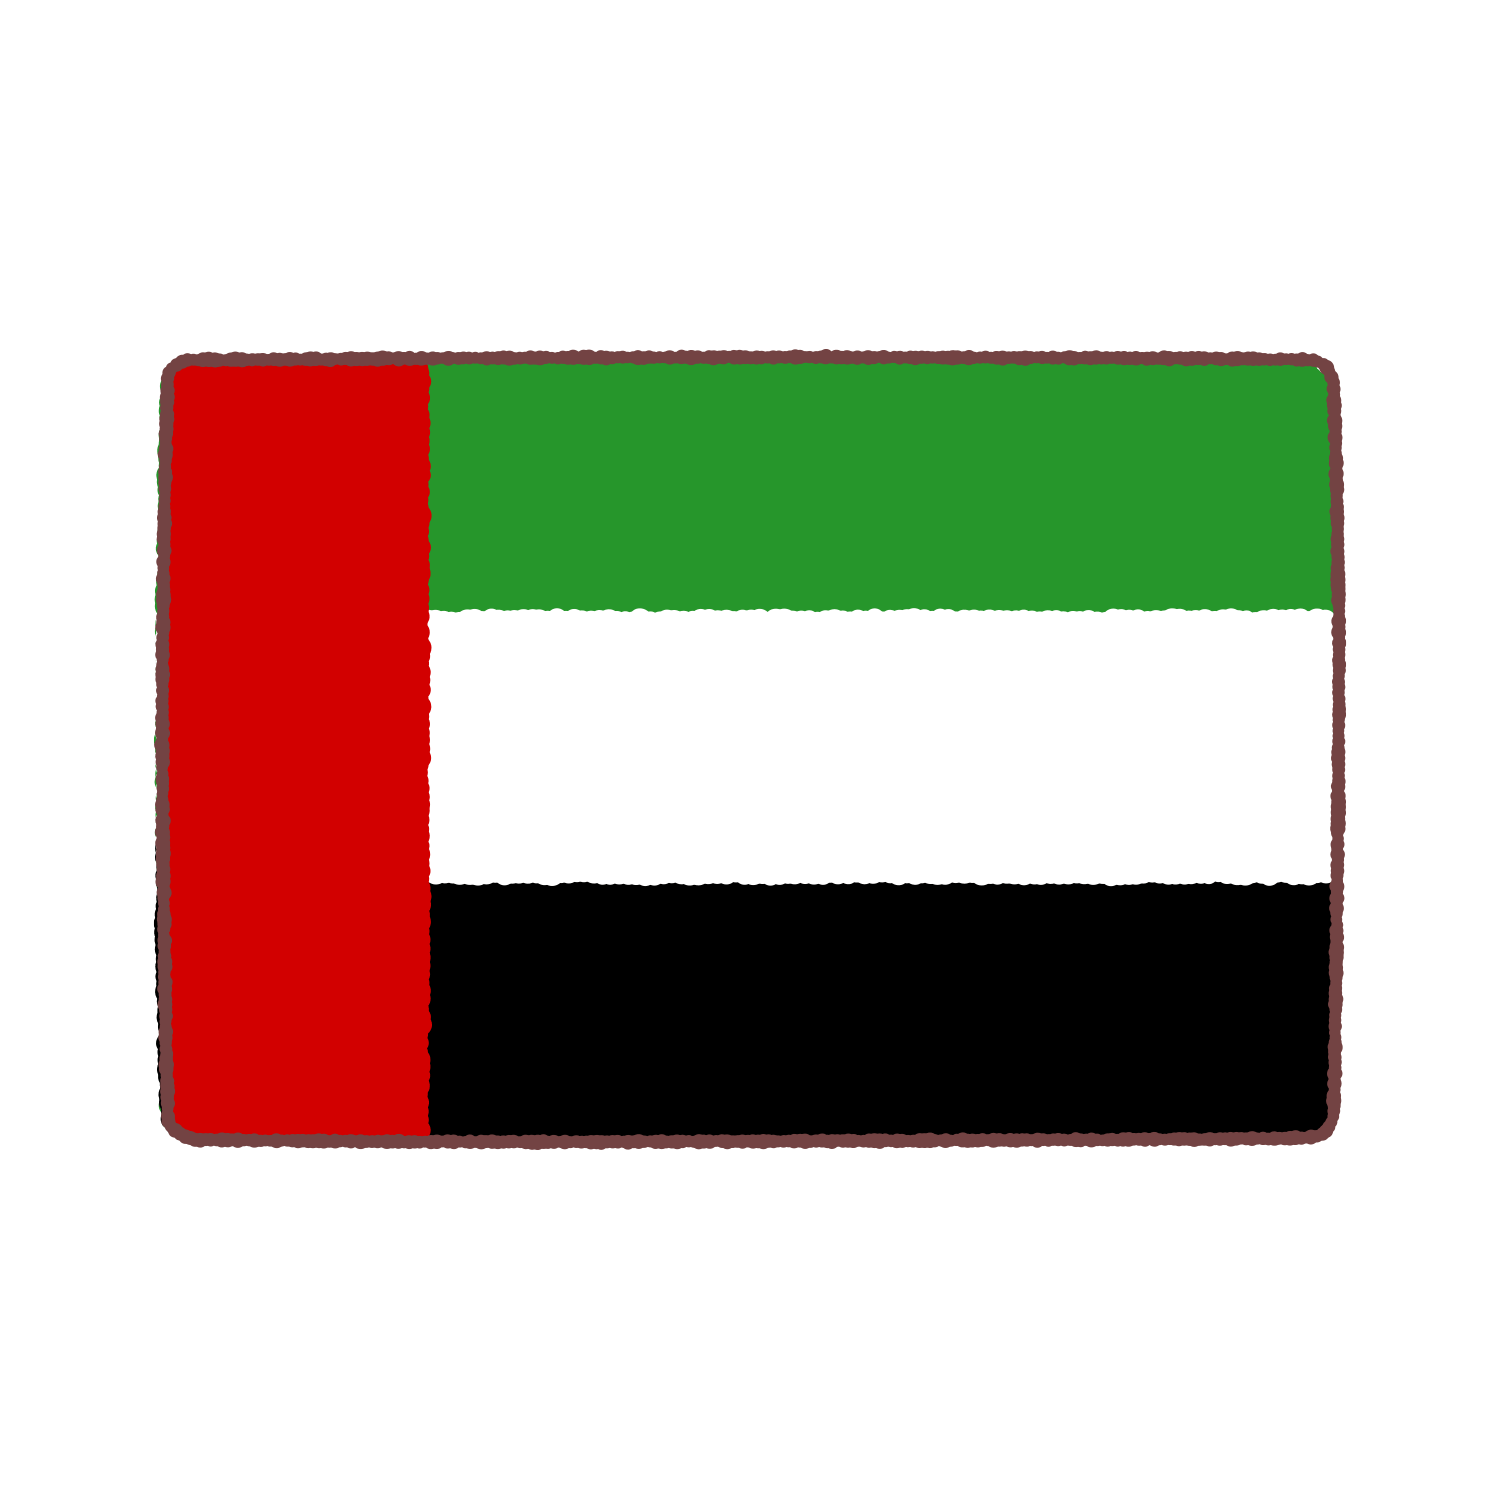 アラブ首長国連邦国旗のイラスト